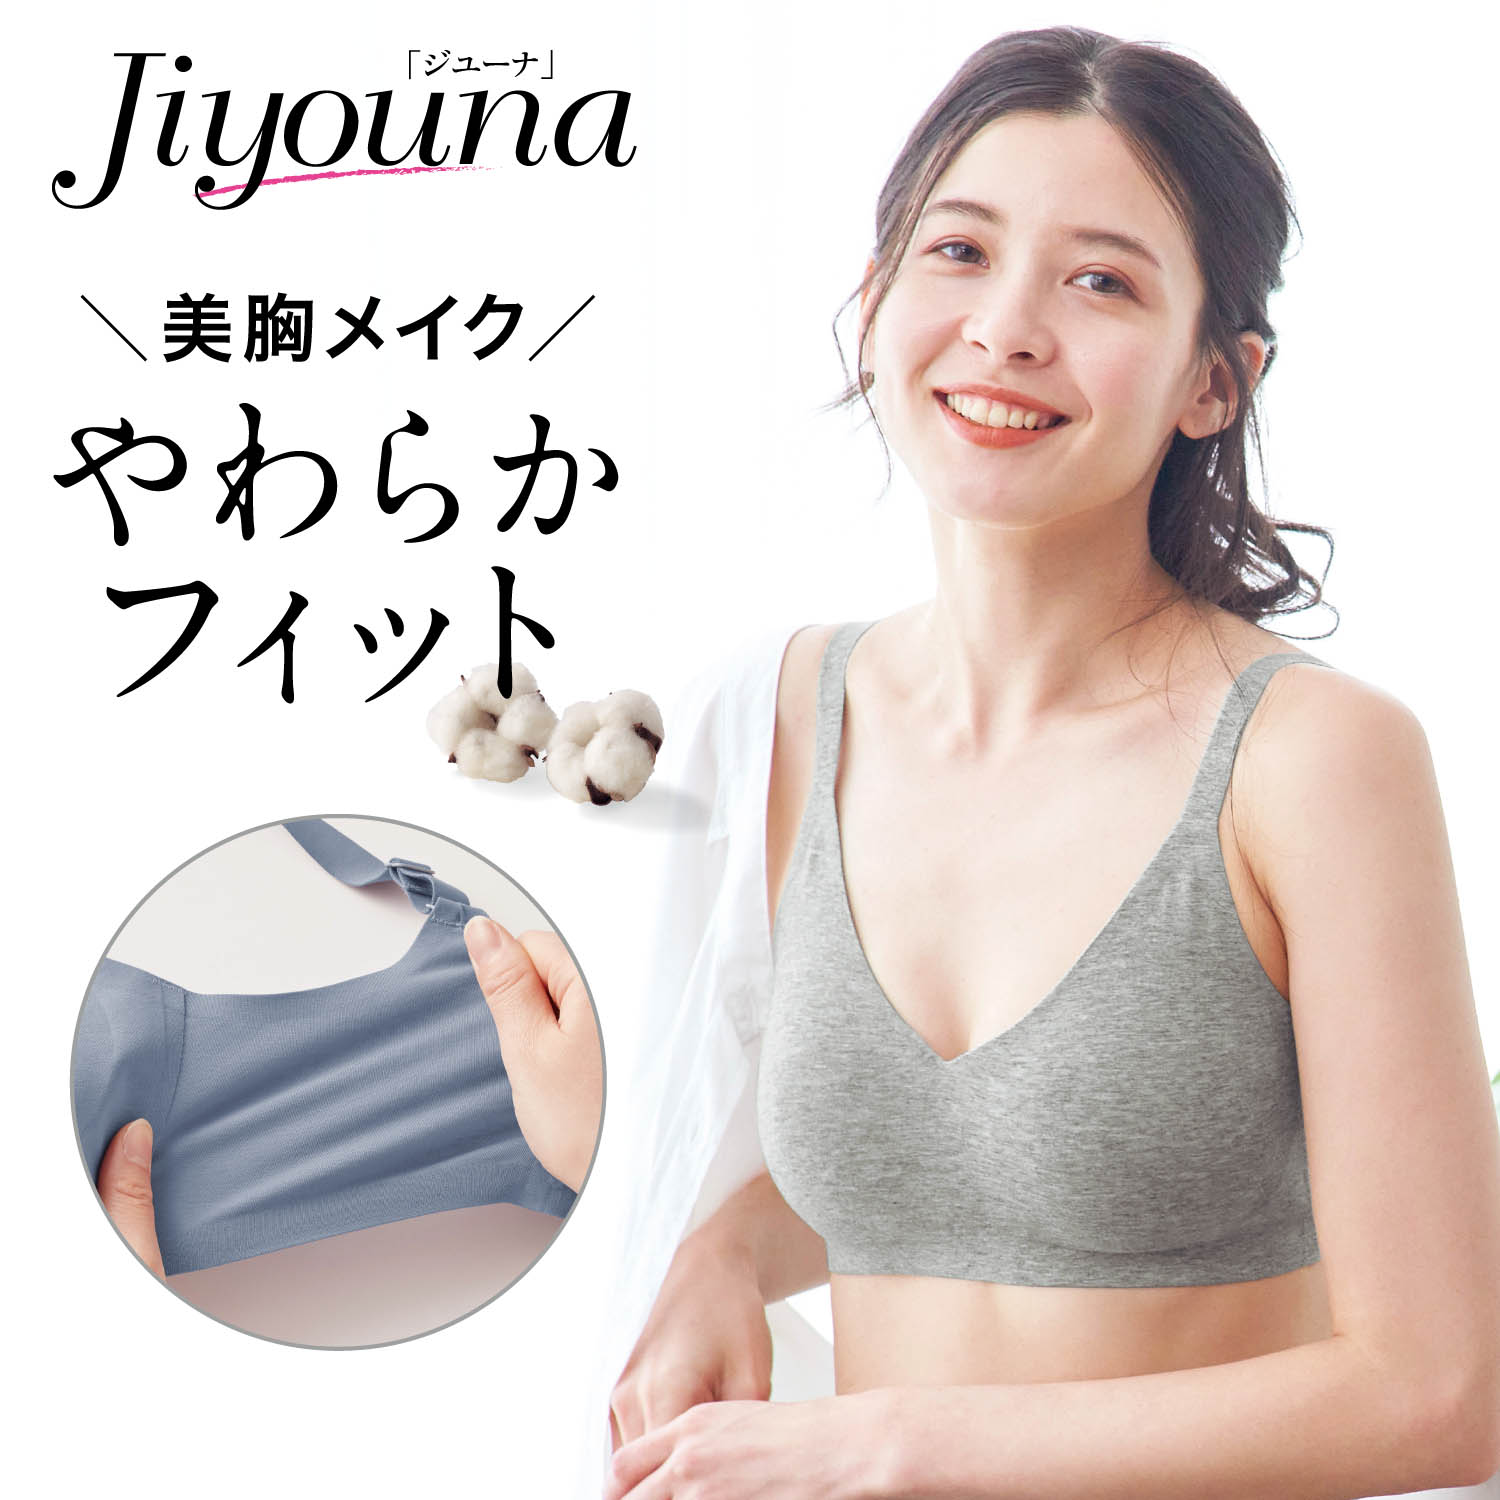 【ジユーナ/Jiyouna】ジユーナブラ【トップス選ばず、ラクちん美胸】(ノンワイヤーブラ)